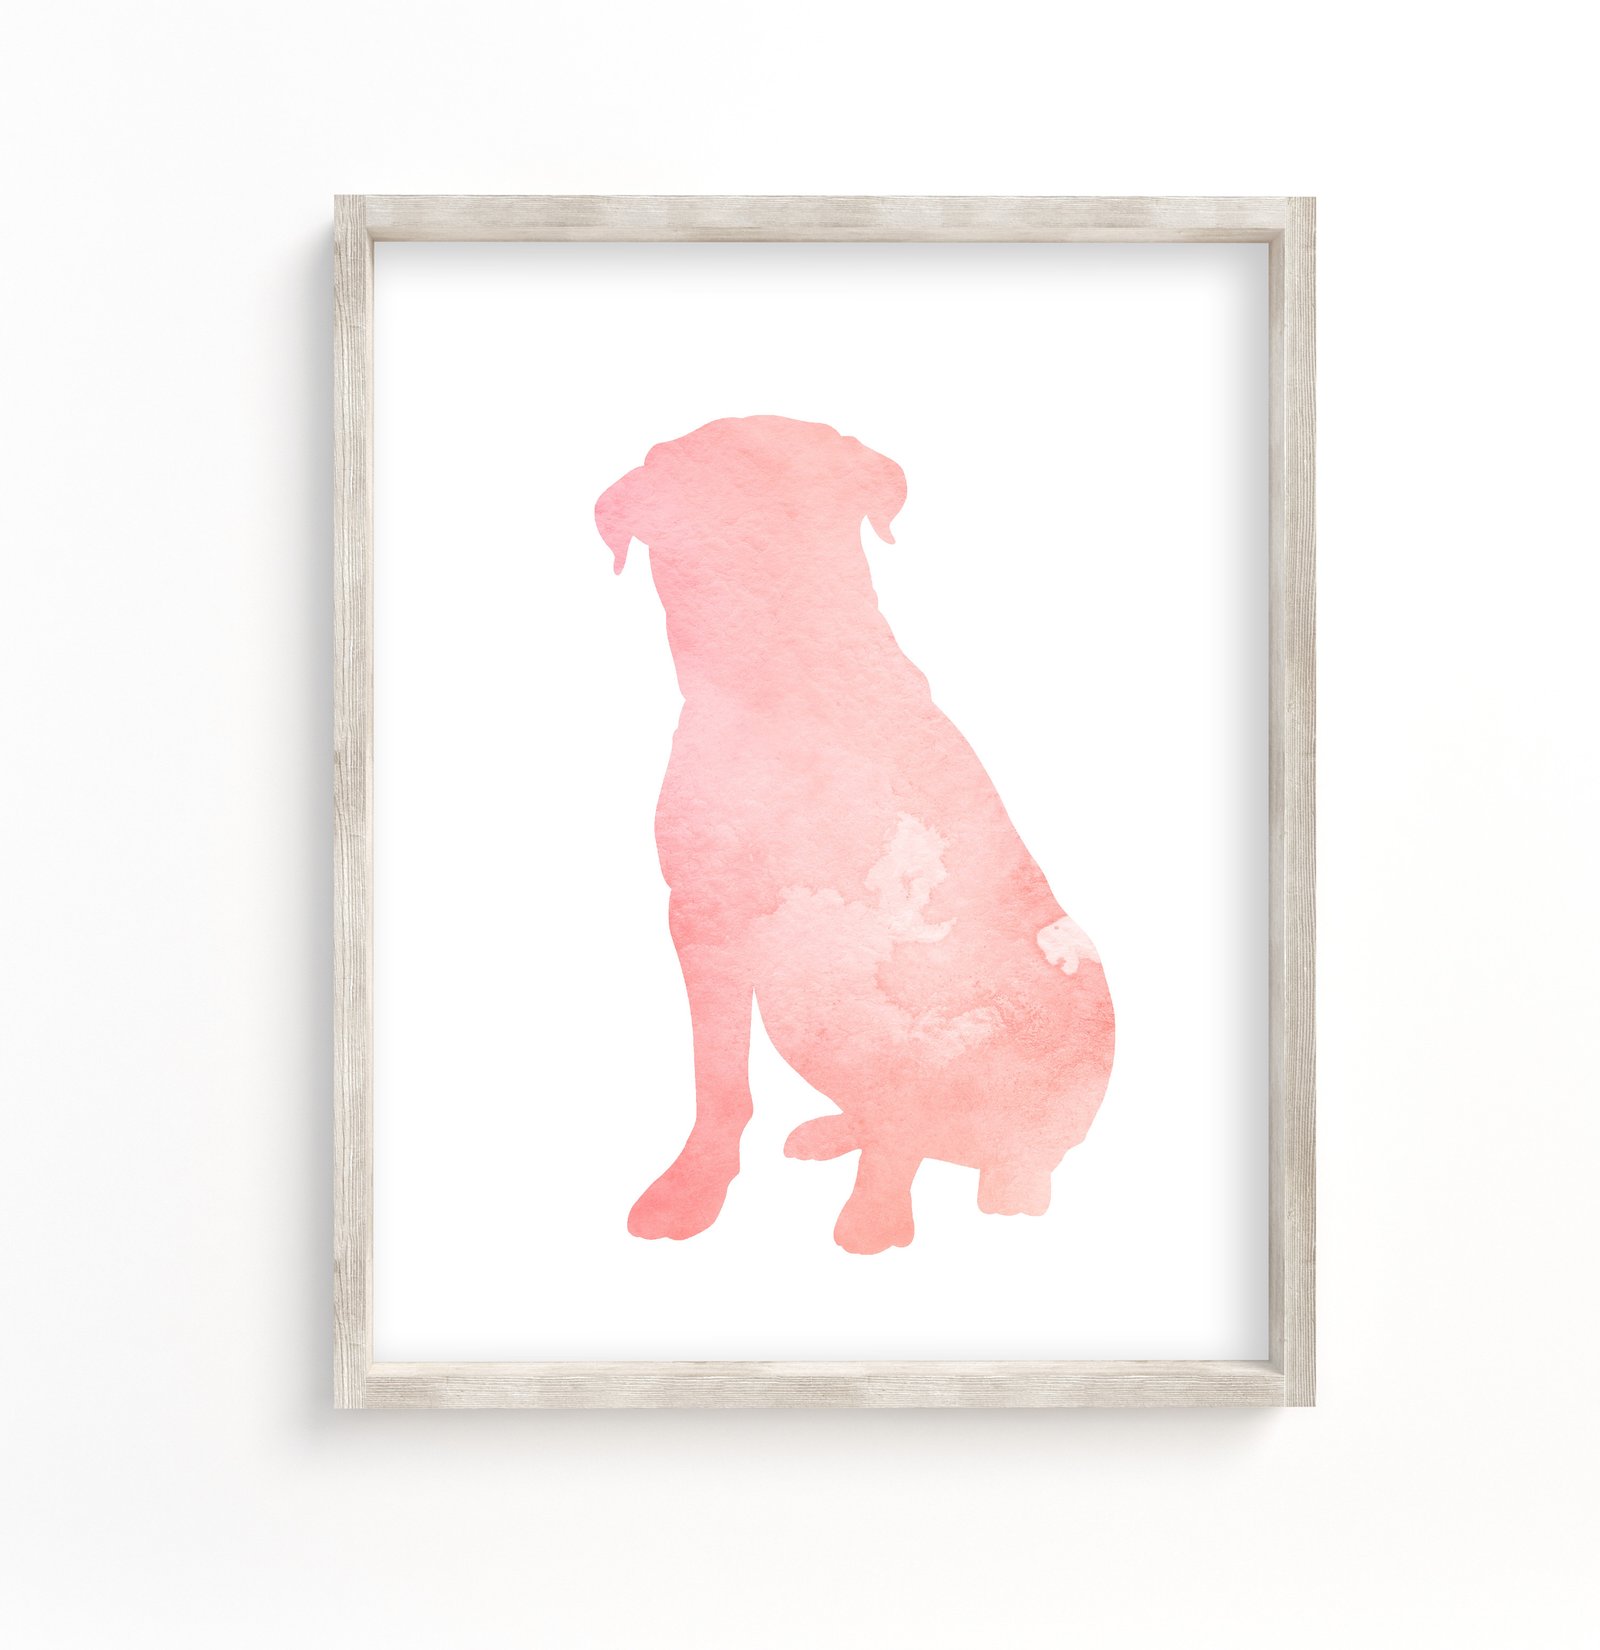 wall decor featuring a pink rottweiler